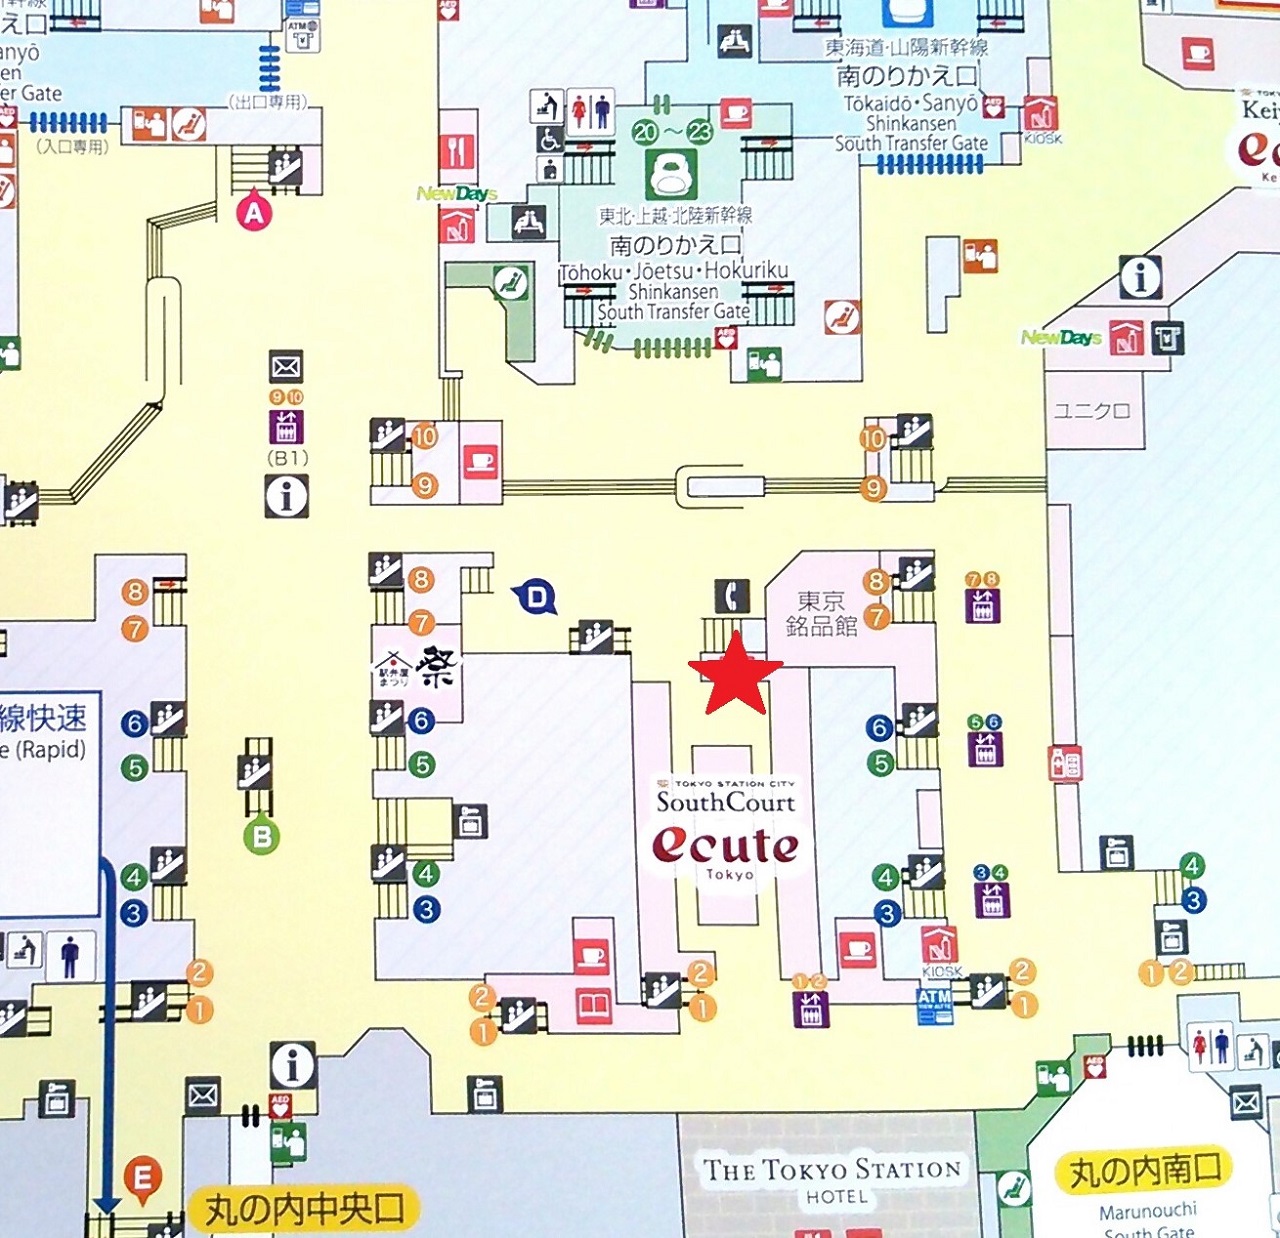 キュート過ぎてテンションが上がる 奈良 天平庵の テディベア最中 東京駅のおすすめお土産グルメ Tabizine 人生に旅心を